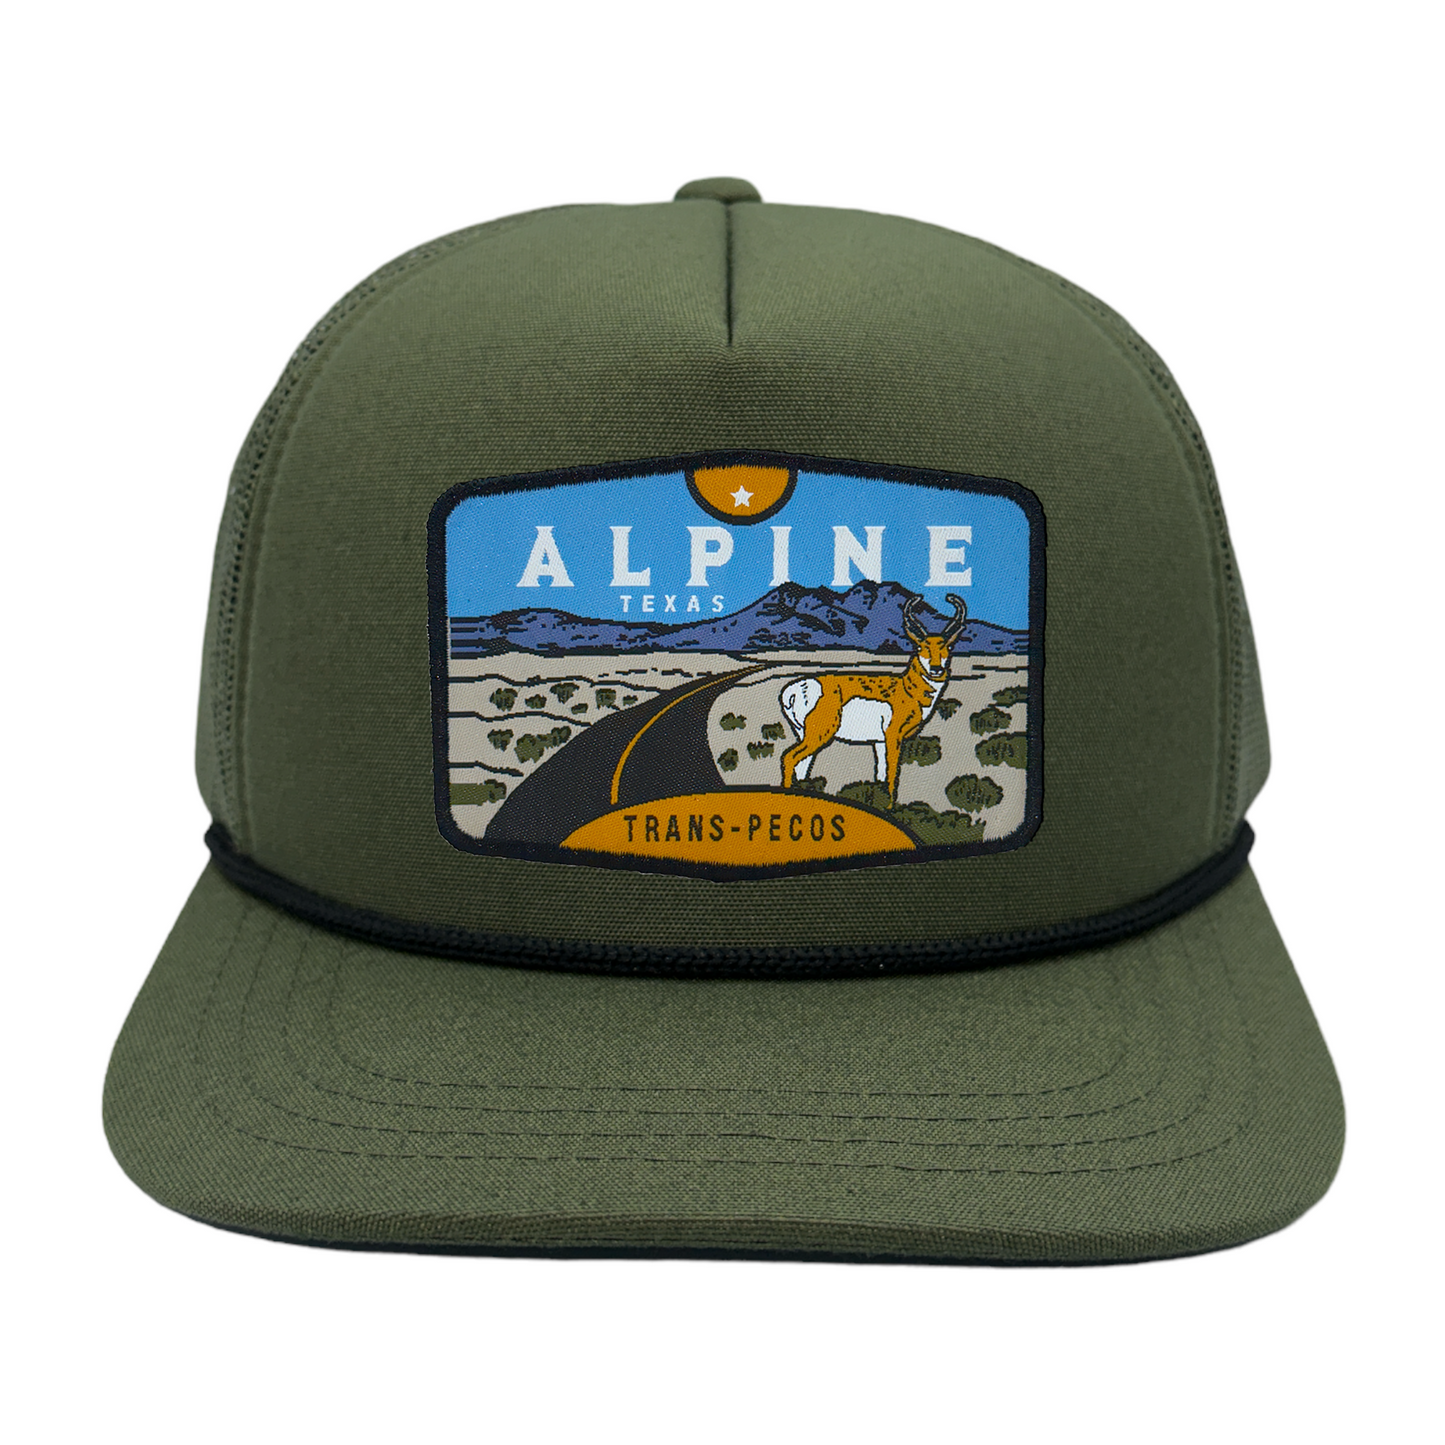 Alpine, TX Trucker